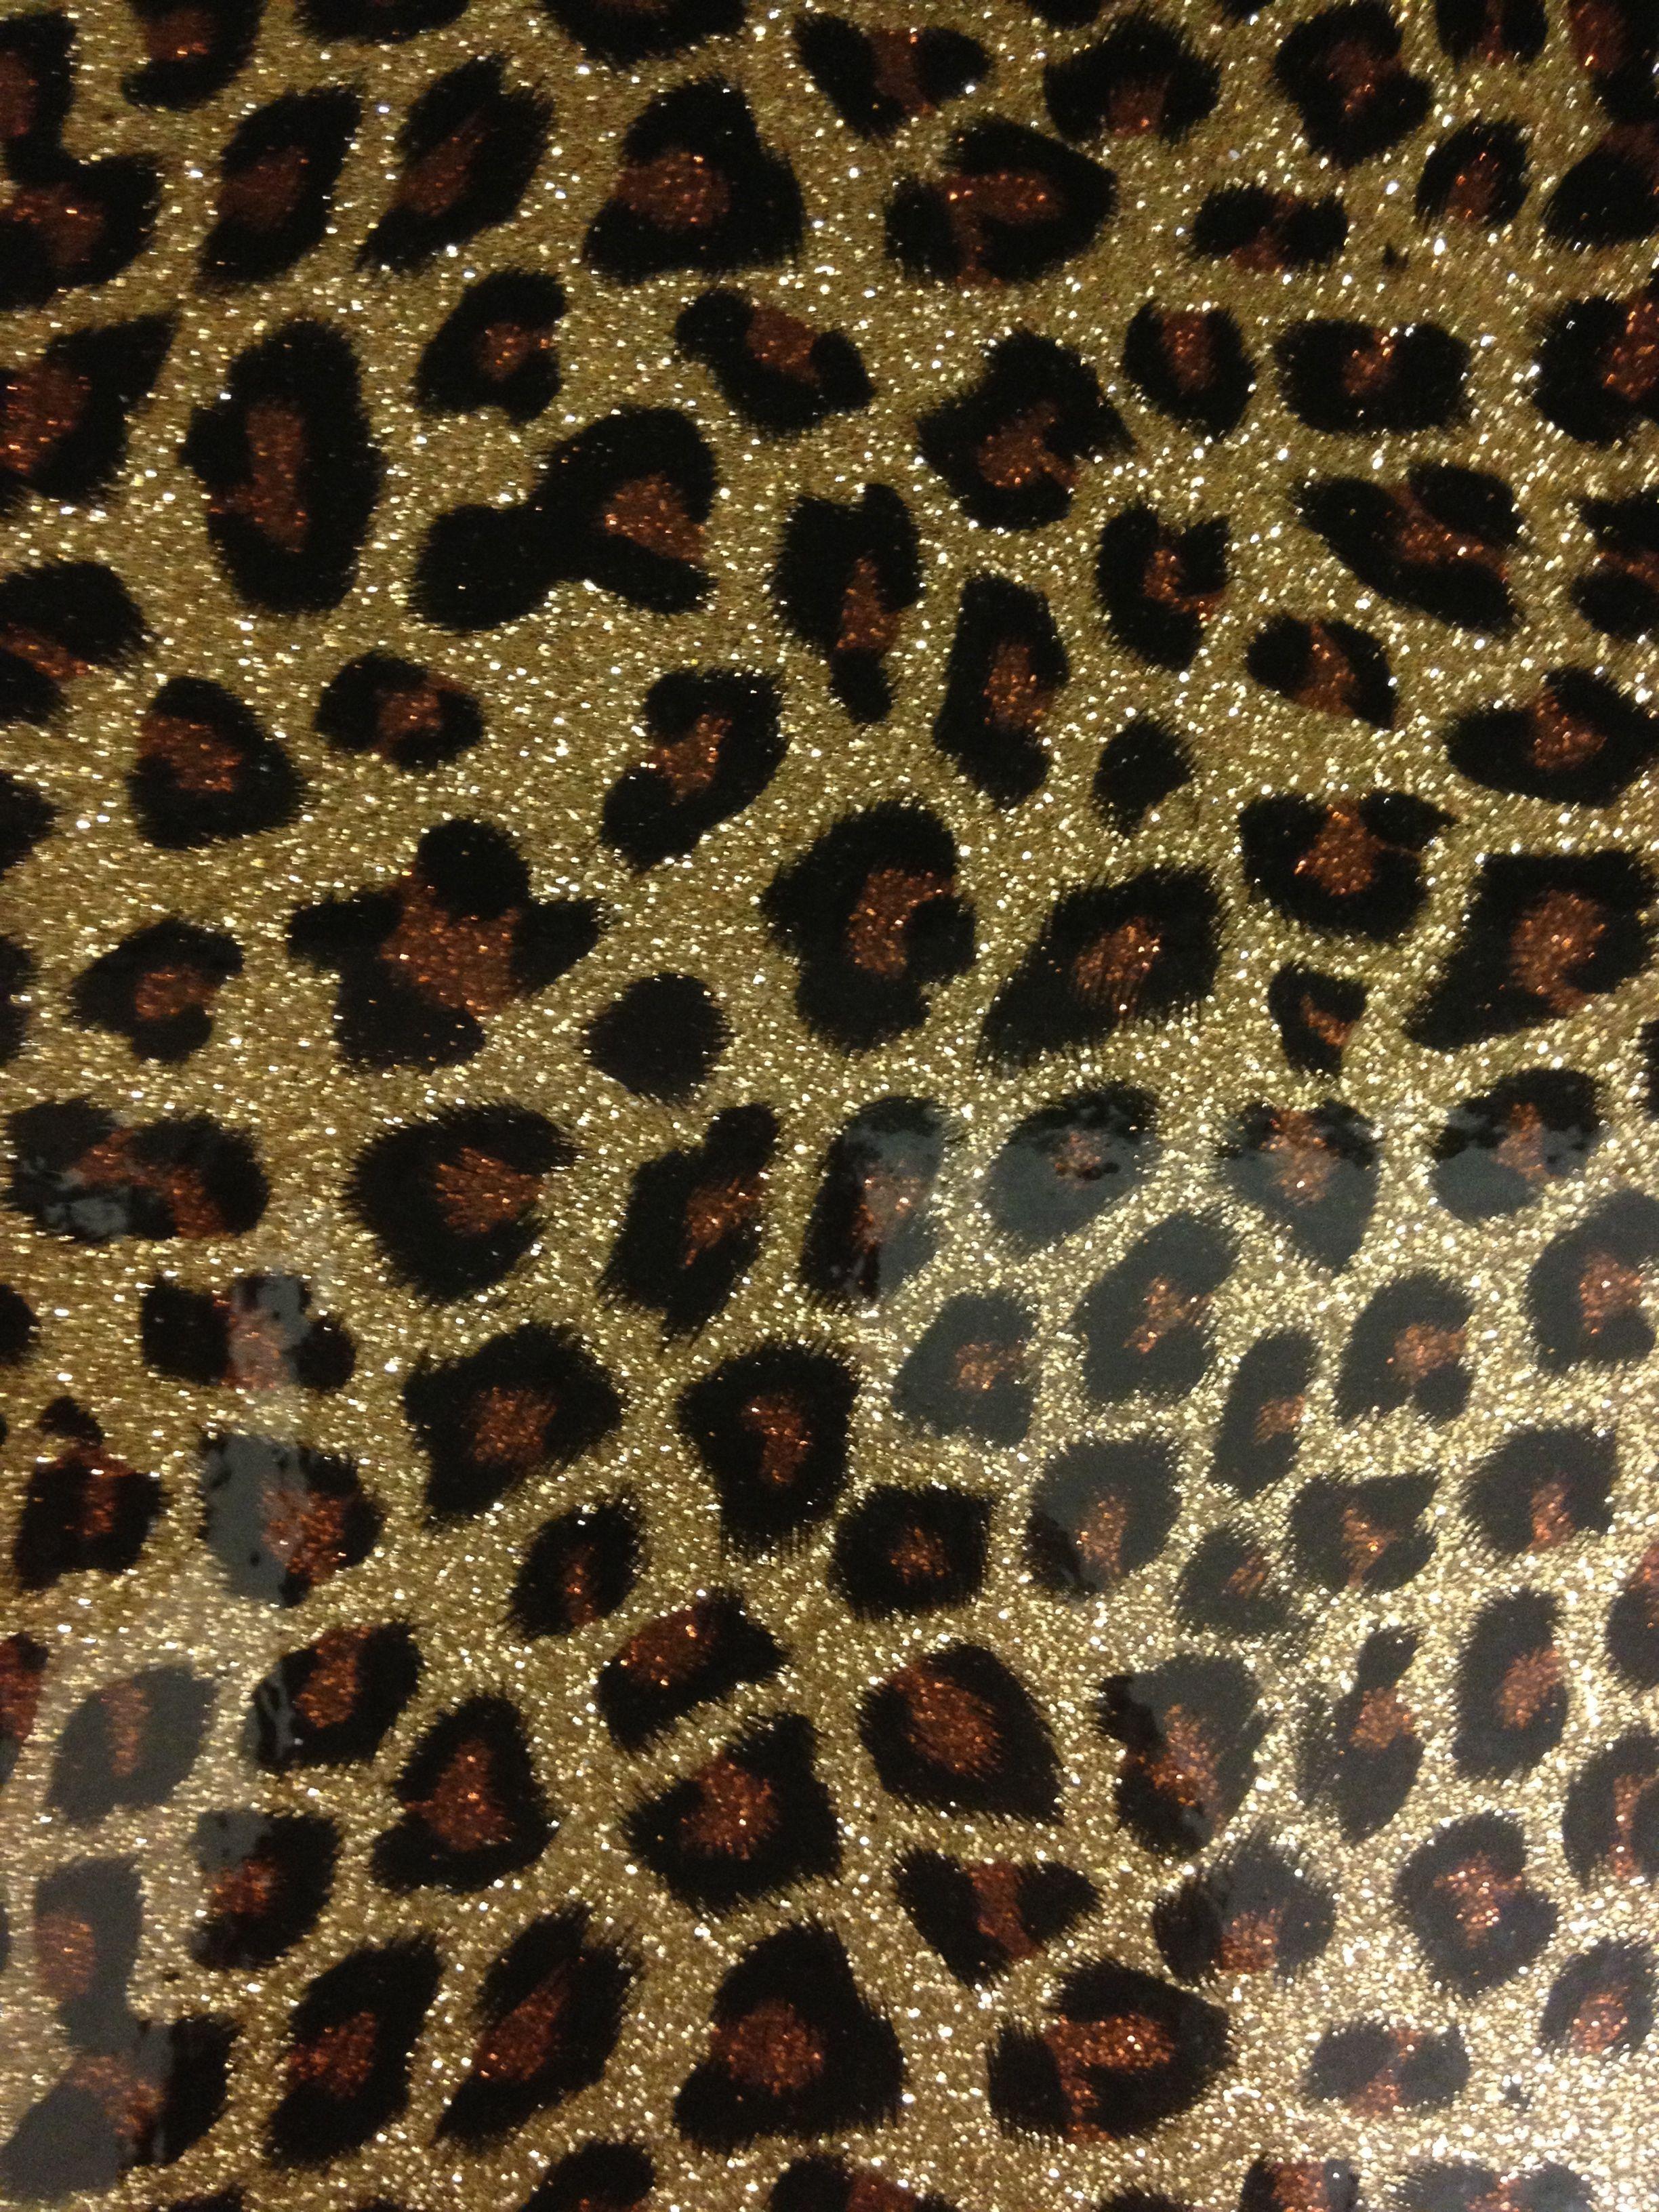 Cheetah Print Wallpapers - Top Những Hình Ảnh Đẹp